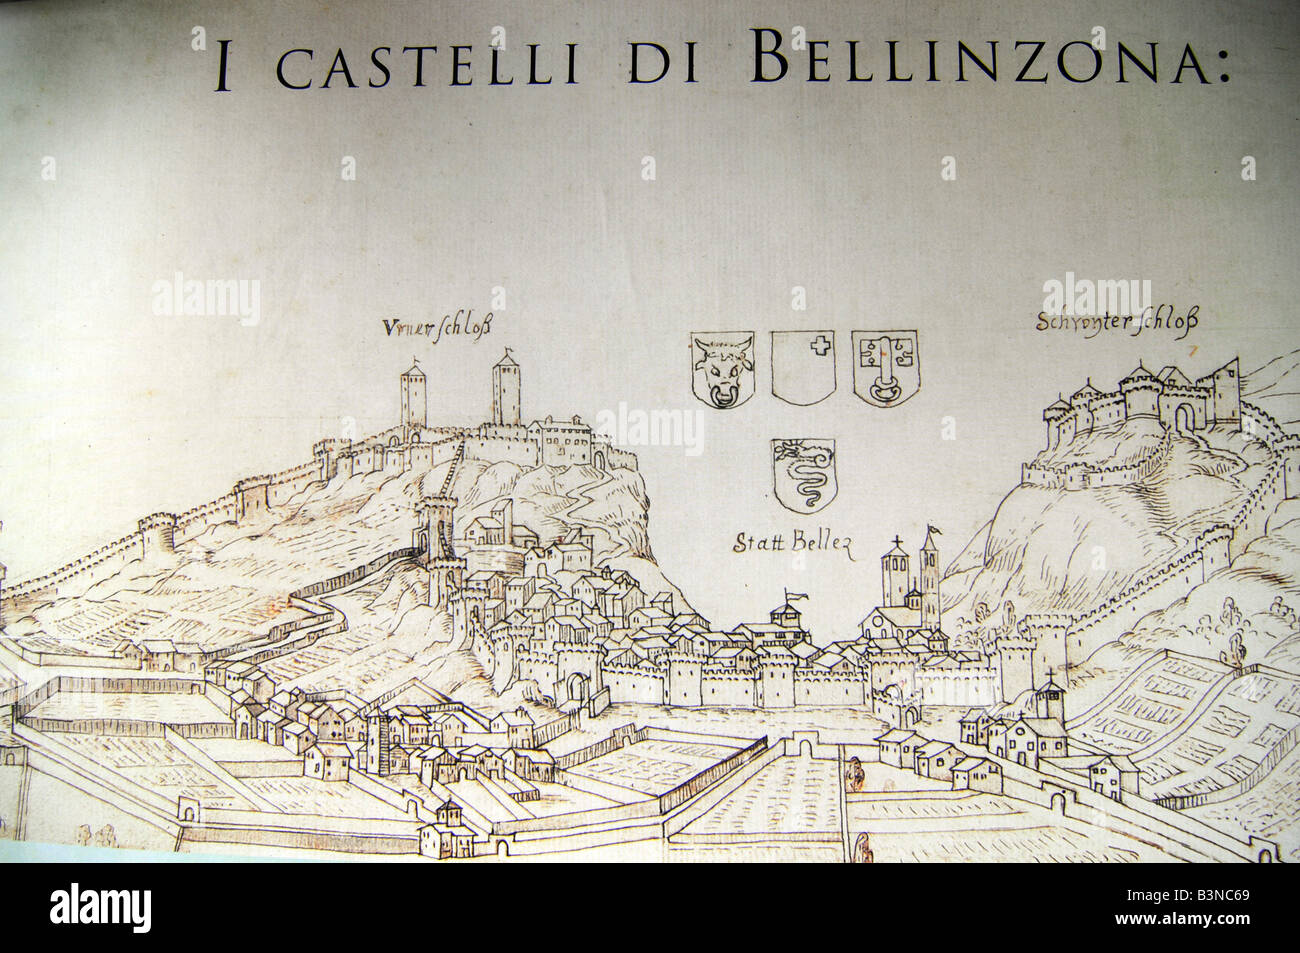 Touristische Karte, die mittelalterliche Burg in Bellinzona, der Hauptstadt der Region Tessin in der Schweiz. Stockfoto